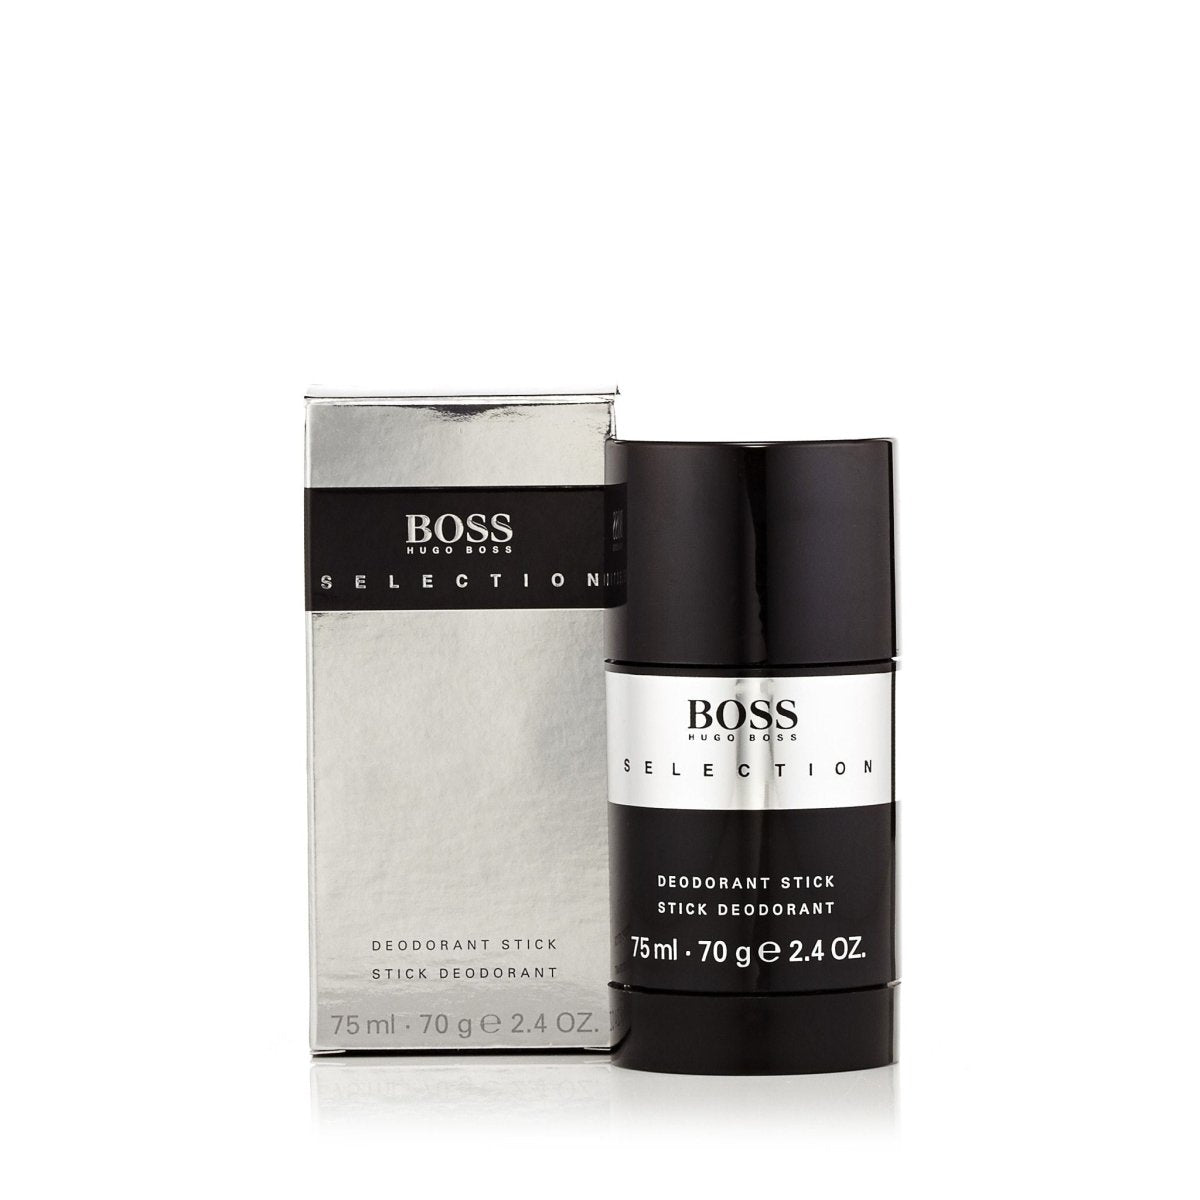 Boss Selection Deodorant for Men by Hugo Boss 2.4 oz.